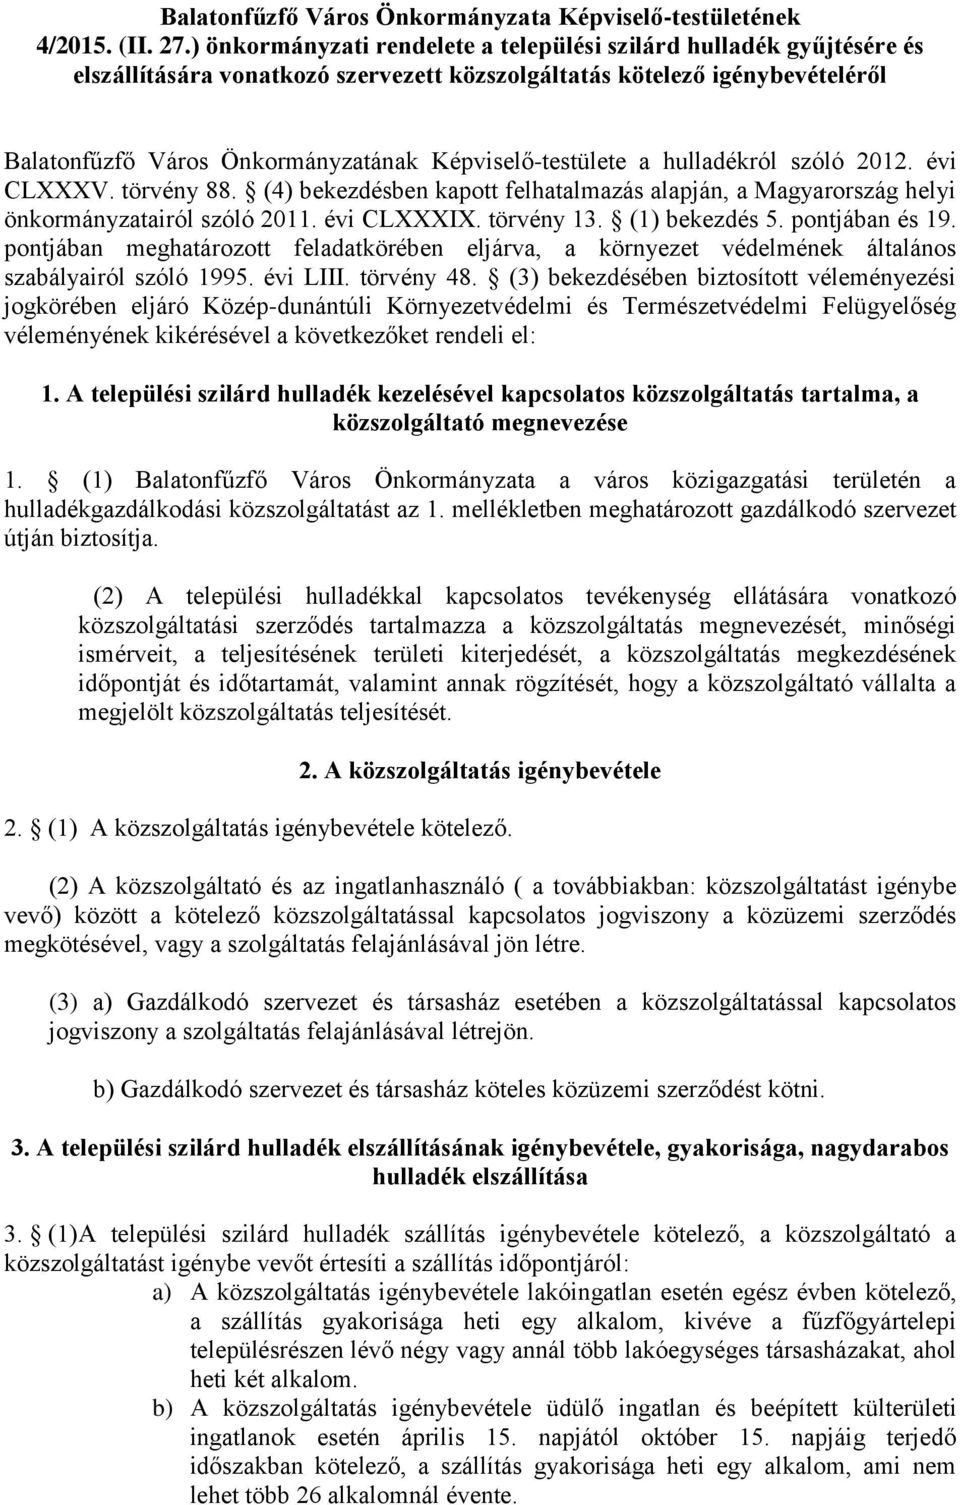 Képviselő-testülete a hulladékról szóló 2012. évi CLXXXV. törvény 88. (4) bekezdésben kapott felhatalmazás alapján, a Magyarország helyi önkormányzatairól szóló 2011. évi CLXXXIX. törvény 13.